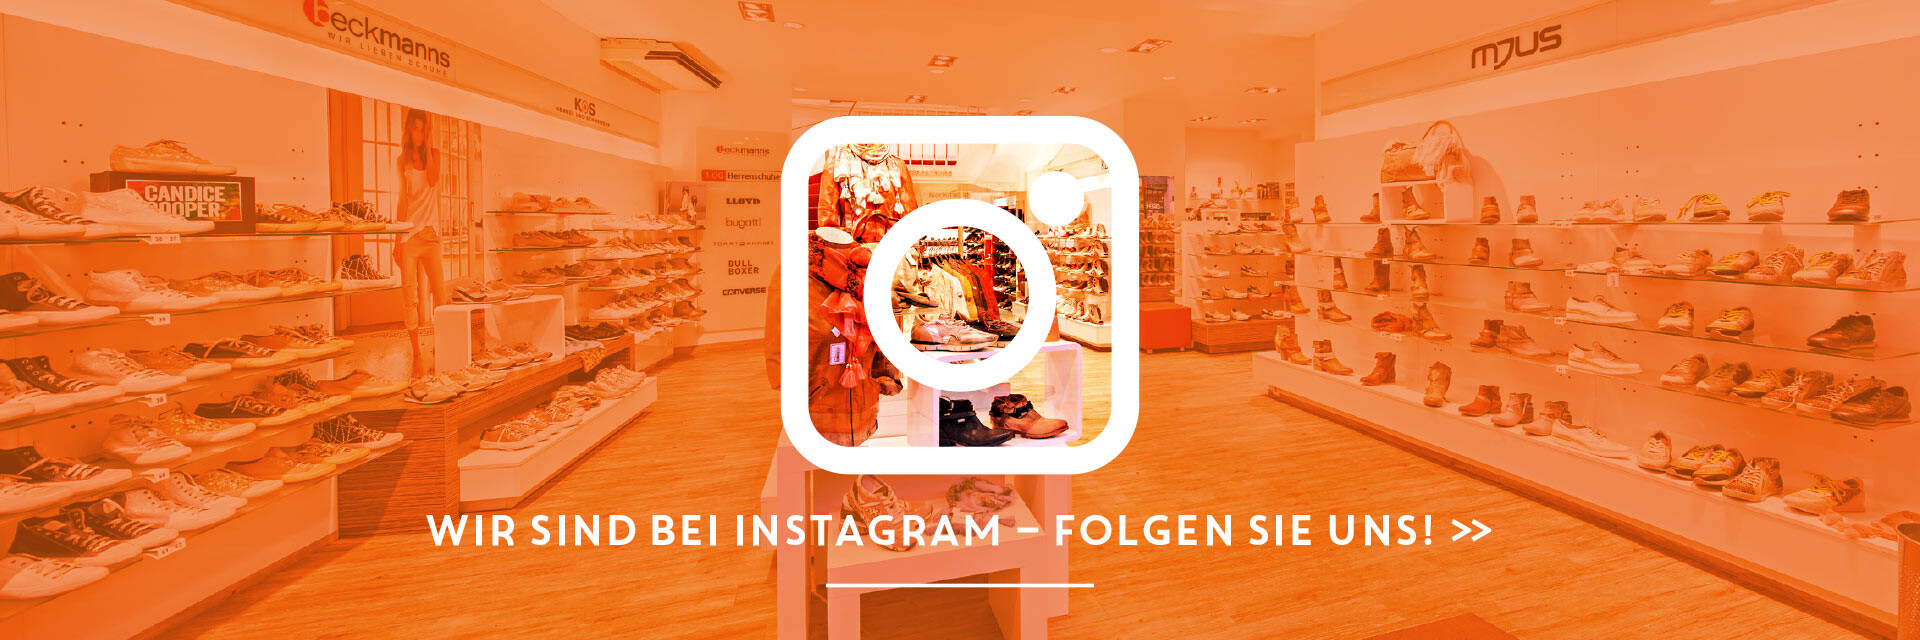 Beckmanns bei Instagram